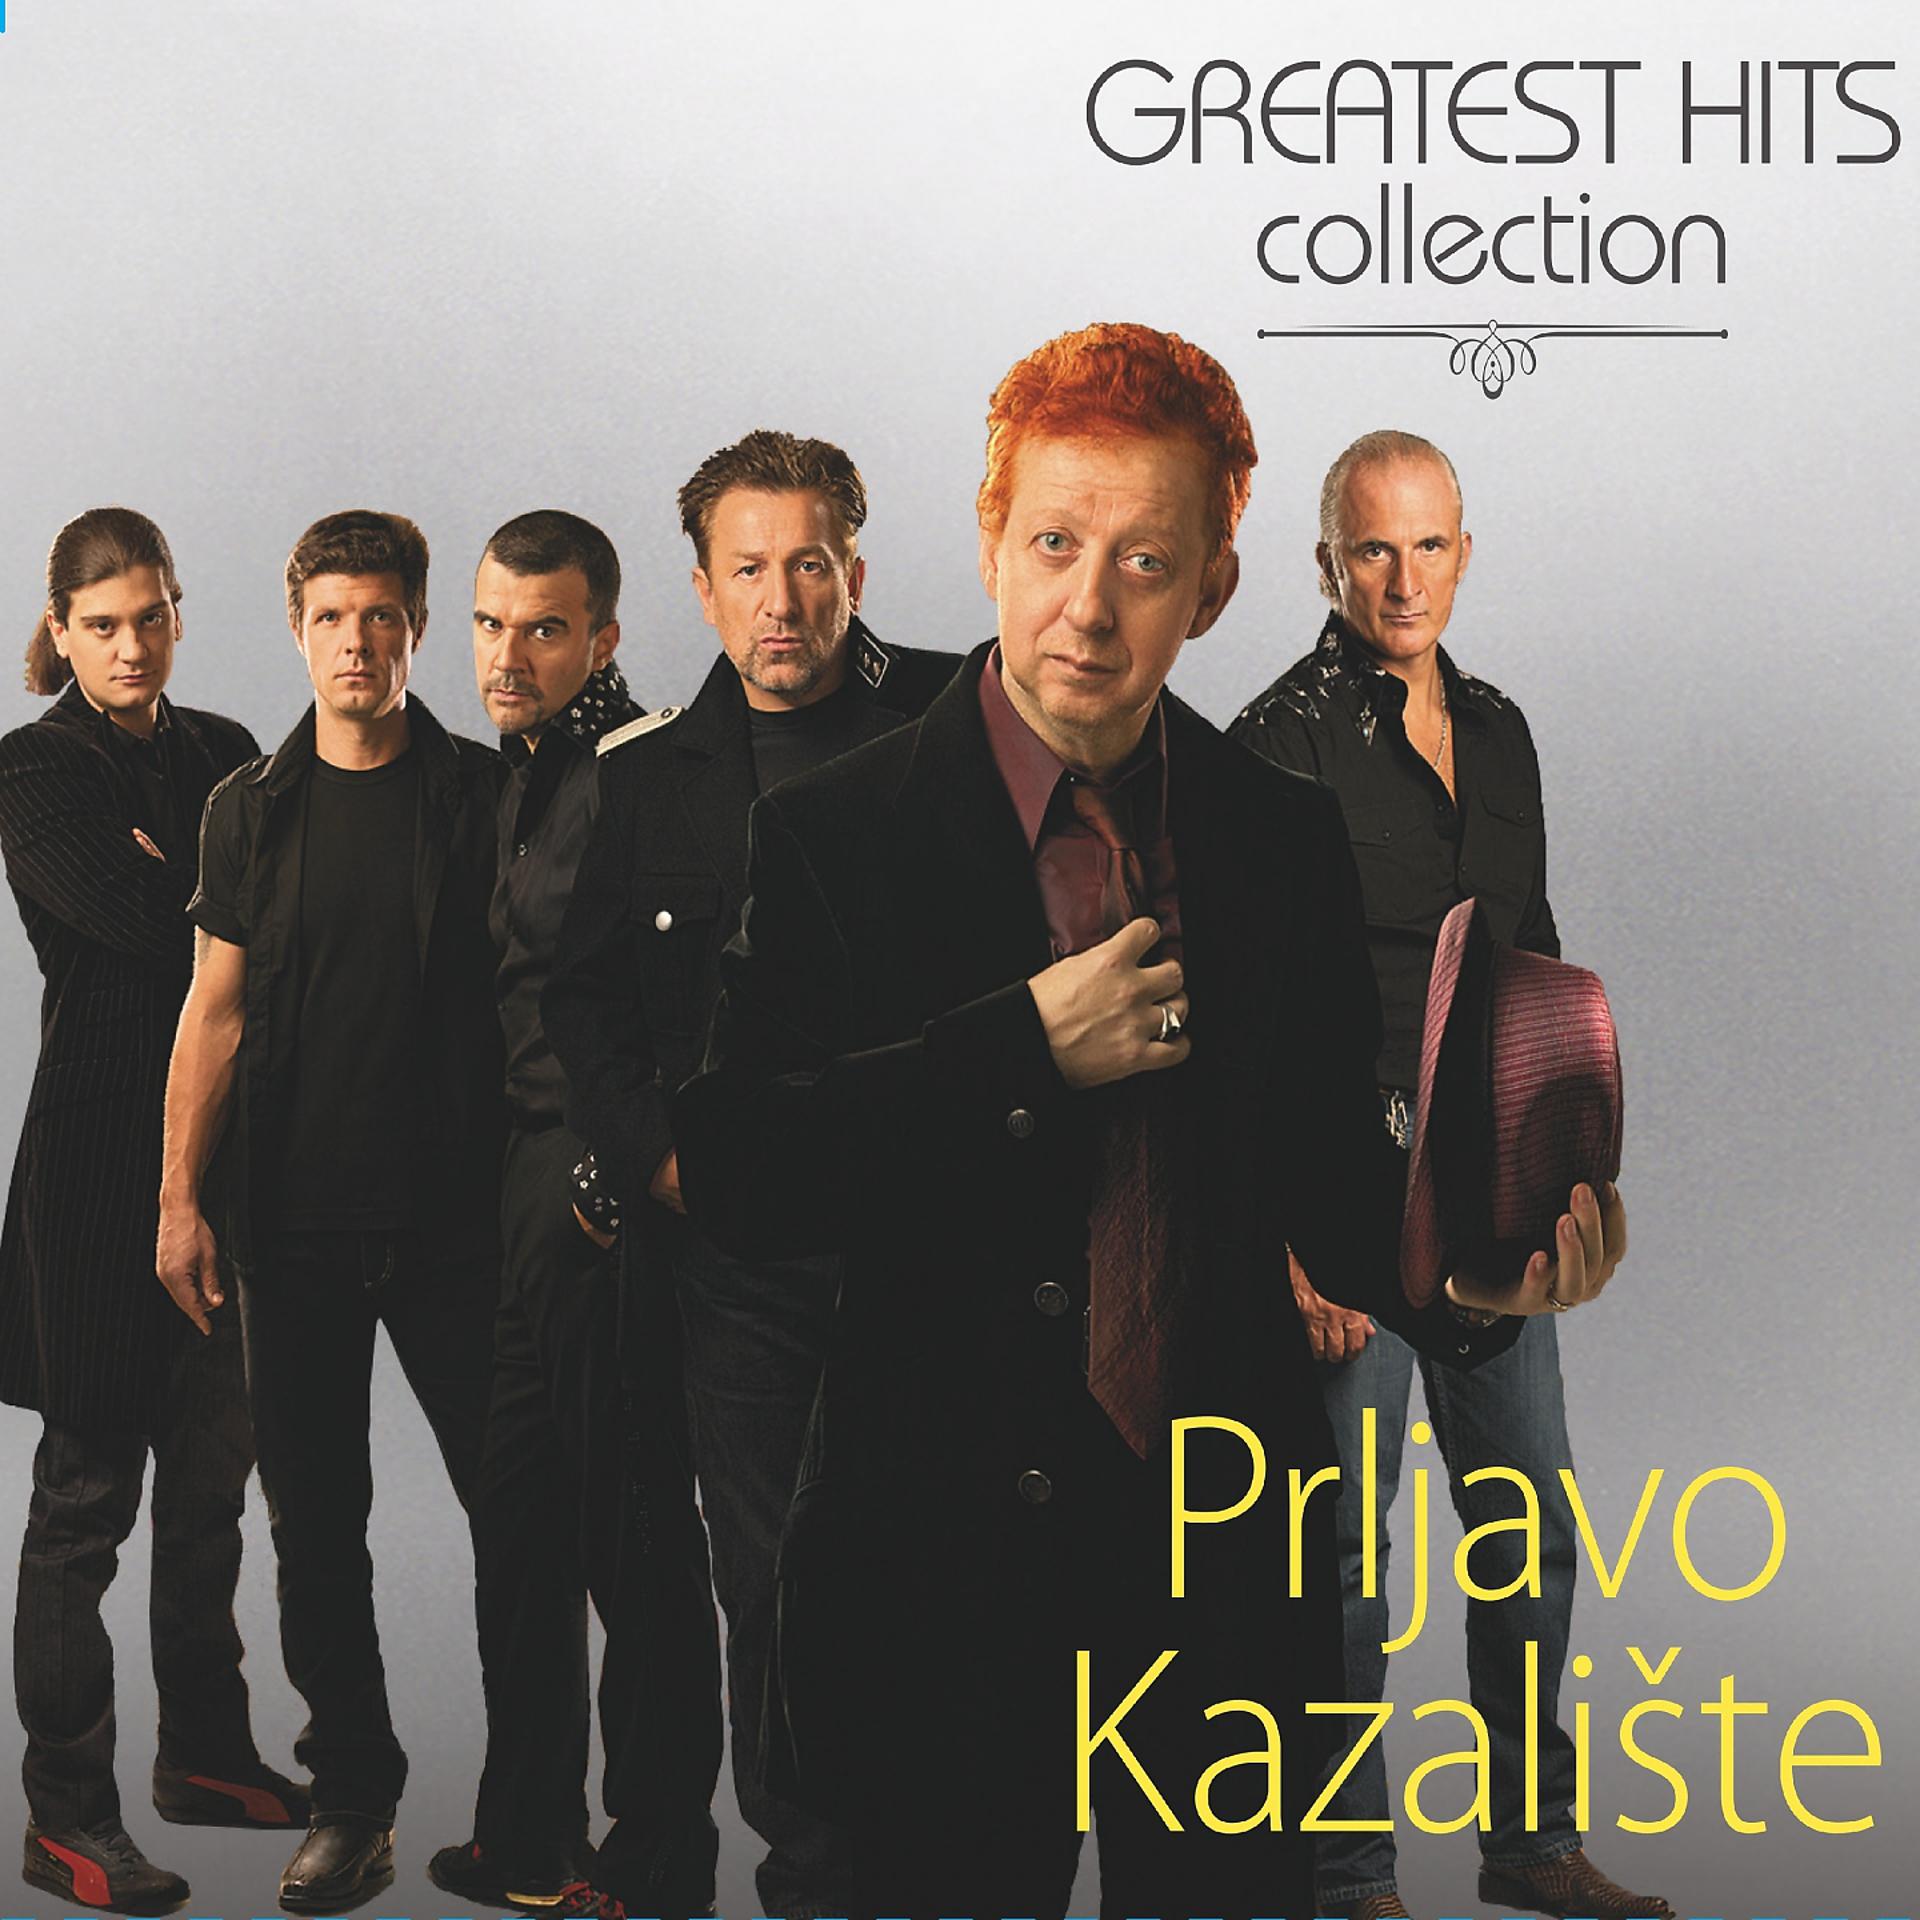 Prljavo Kazalište группа. Prljavo Kazaliste солист. Prljavo Kazalište фото группы. Greatest hits collection